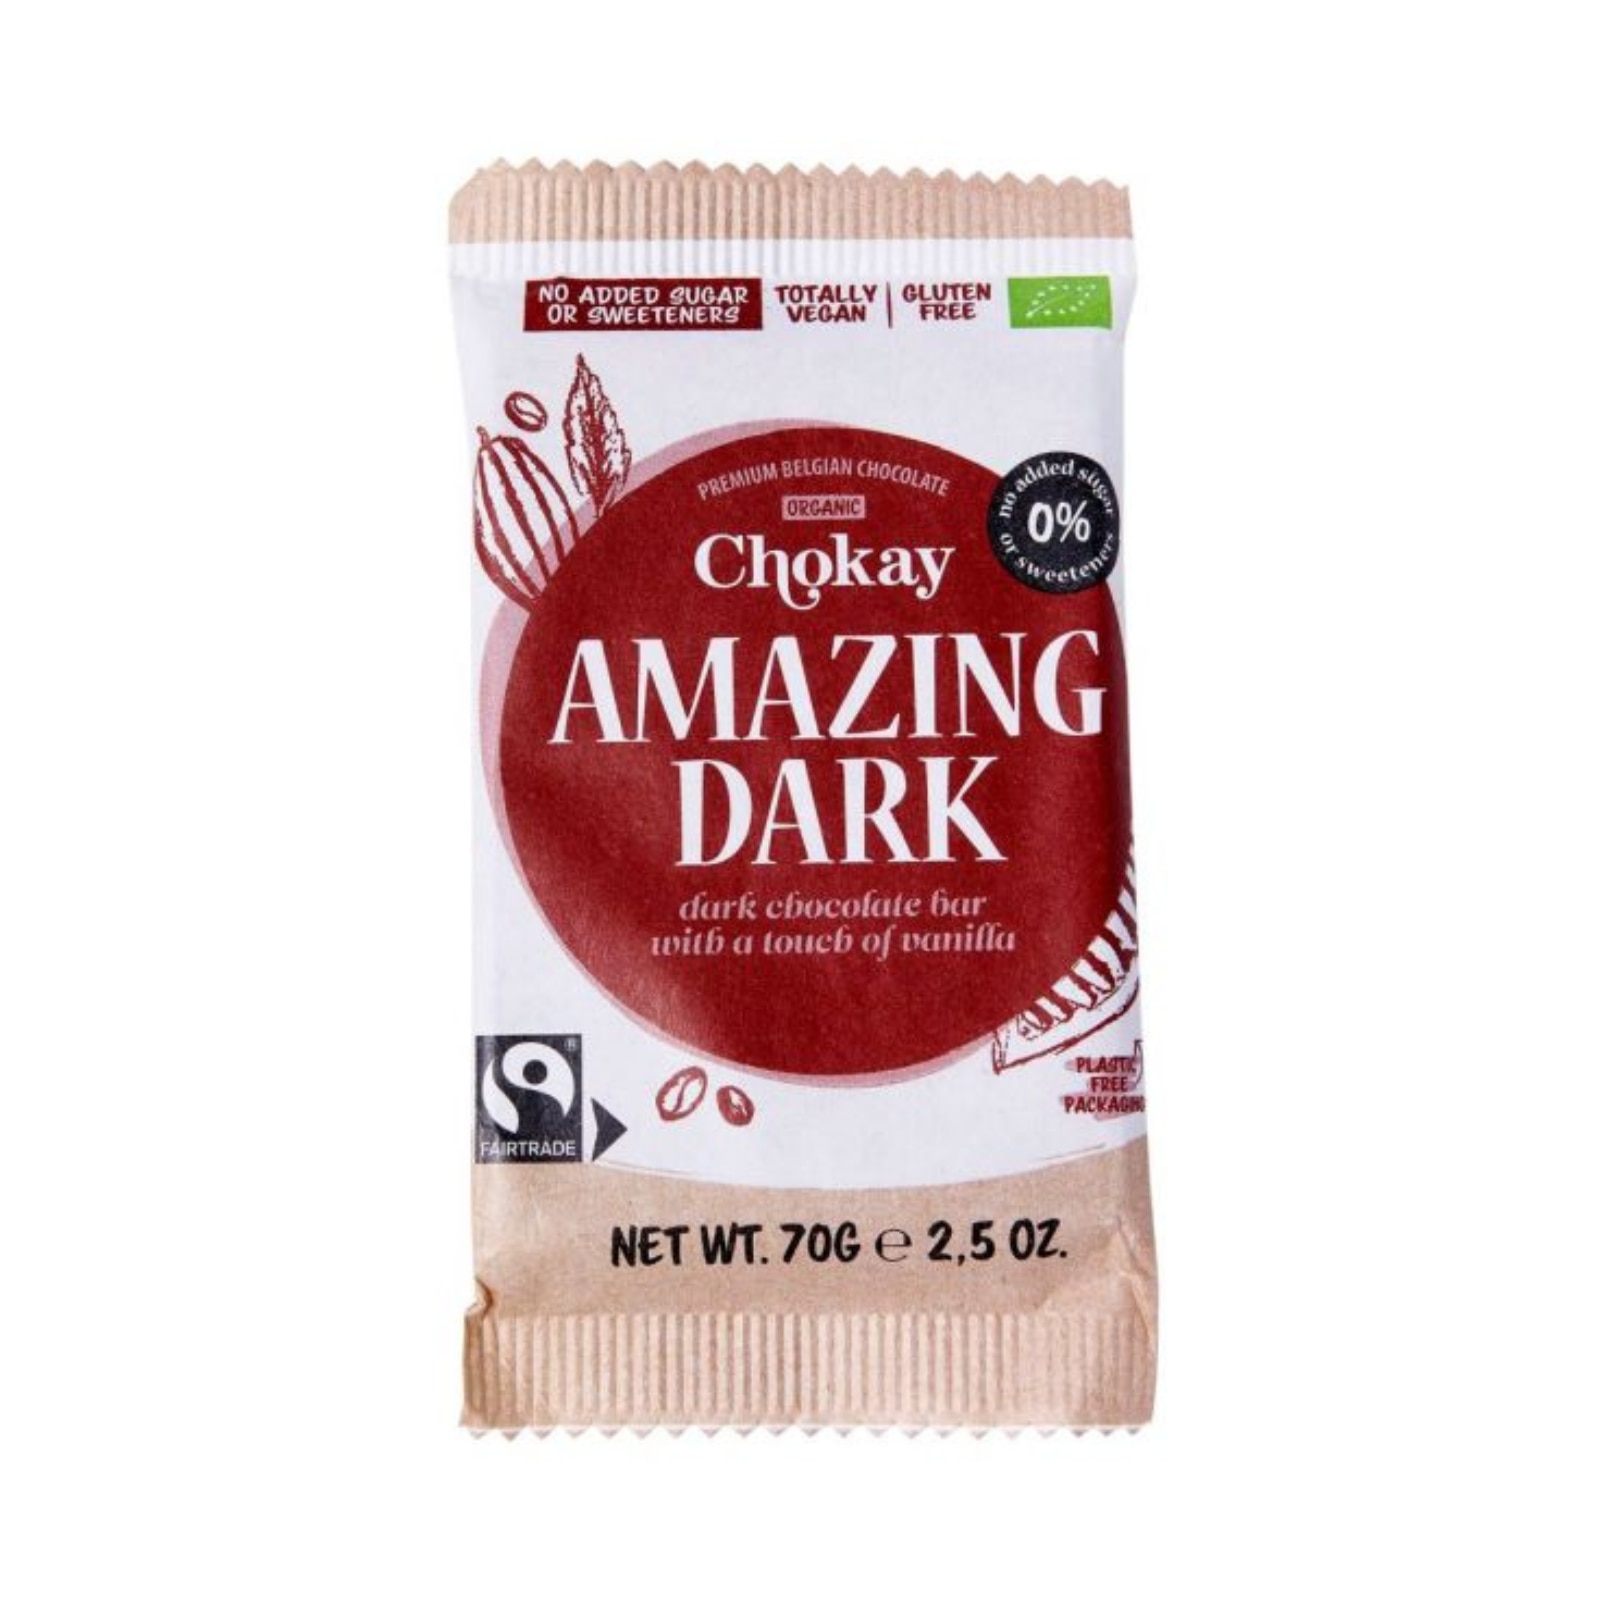 Chokay mørk sjokolade med vanilje